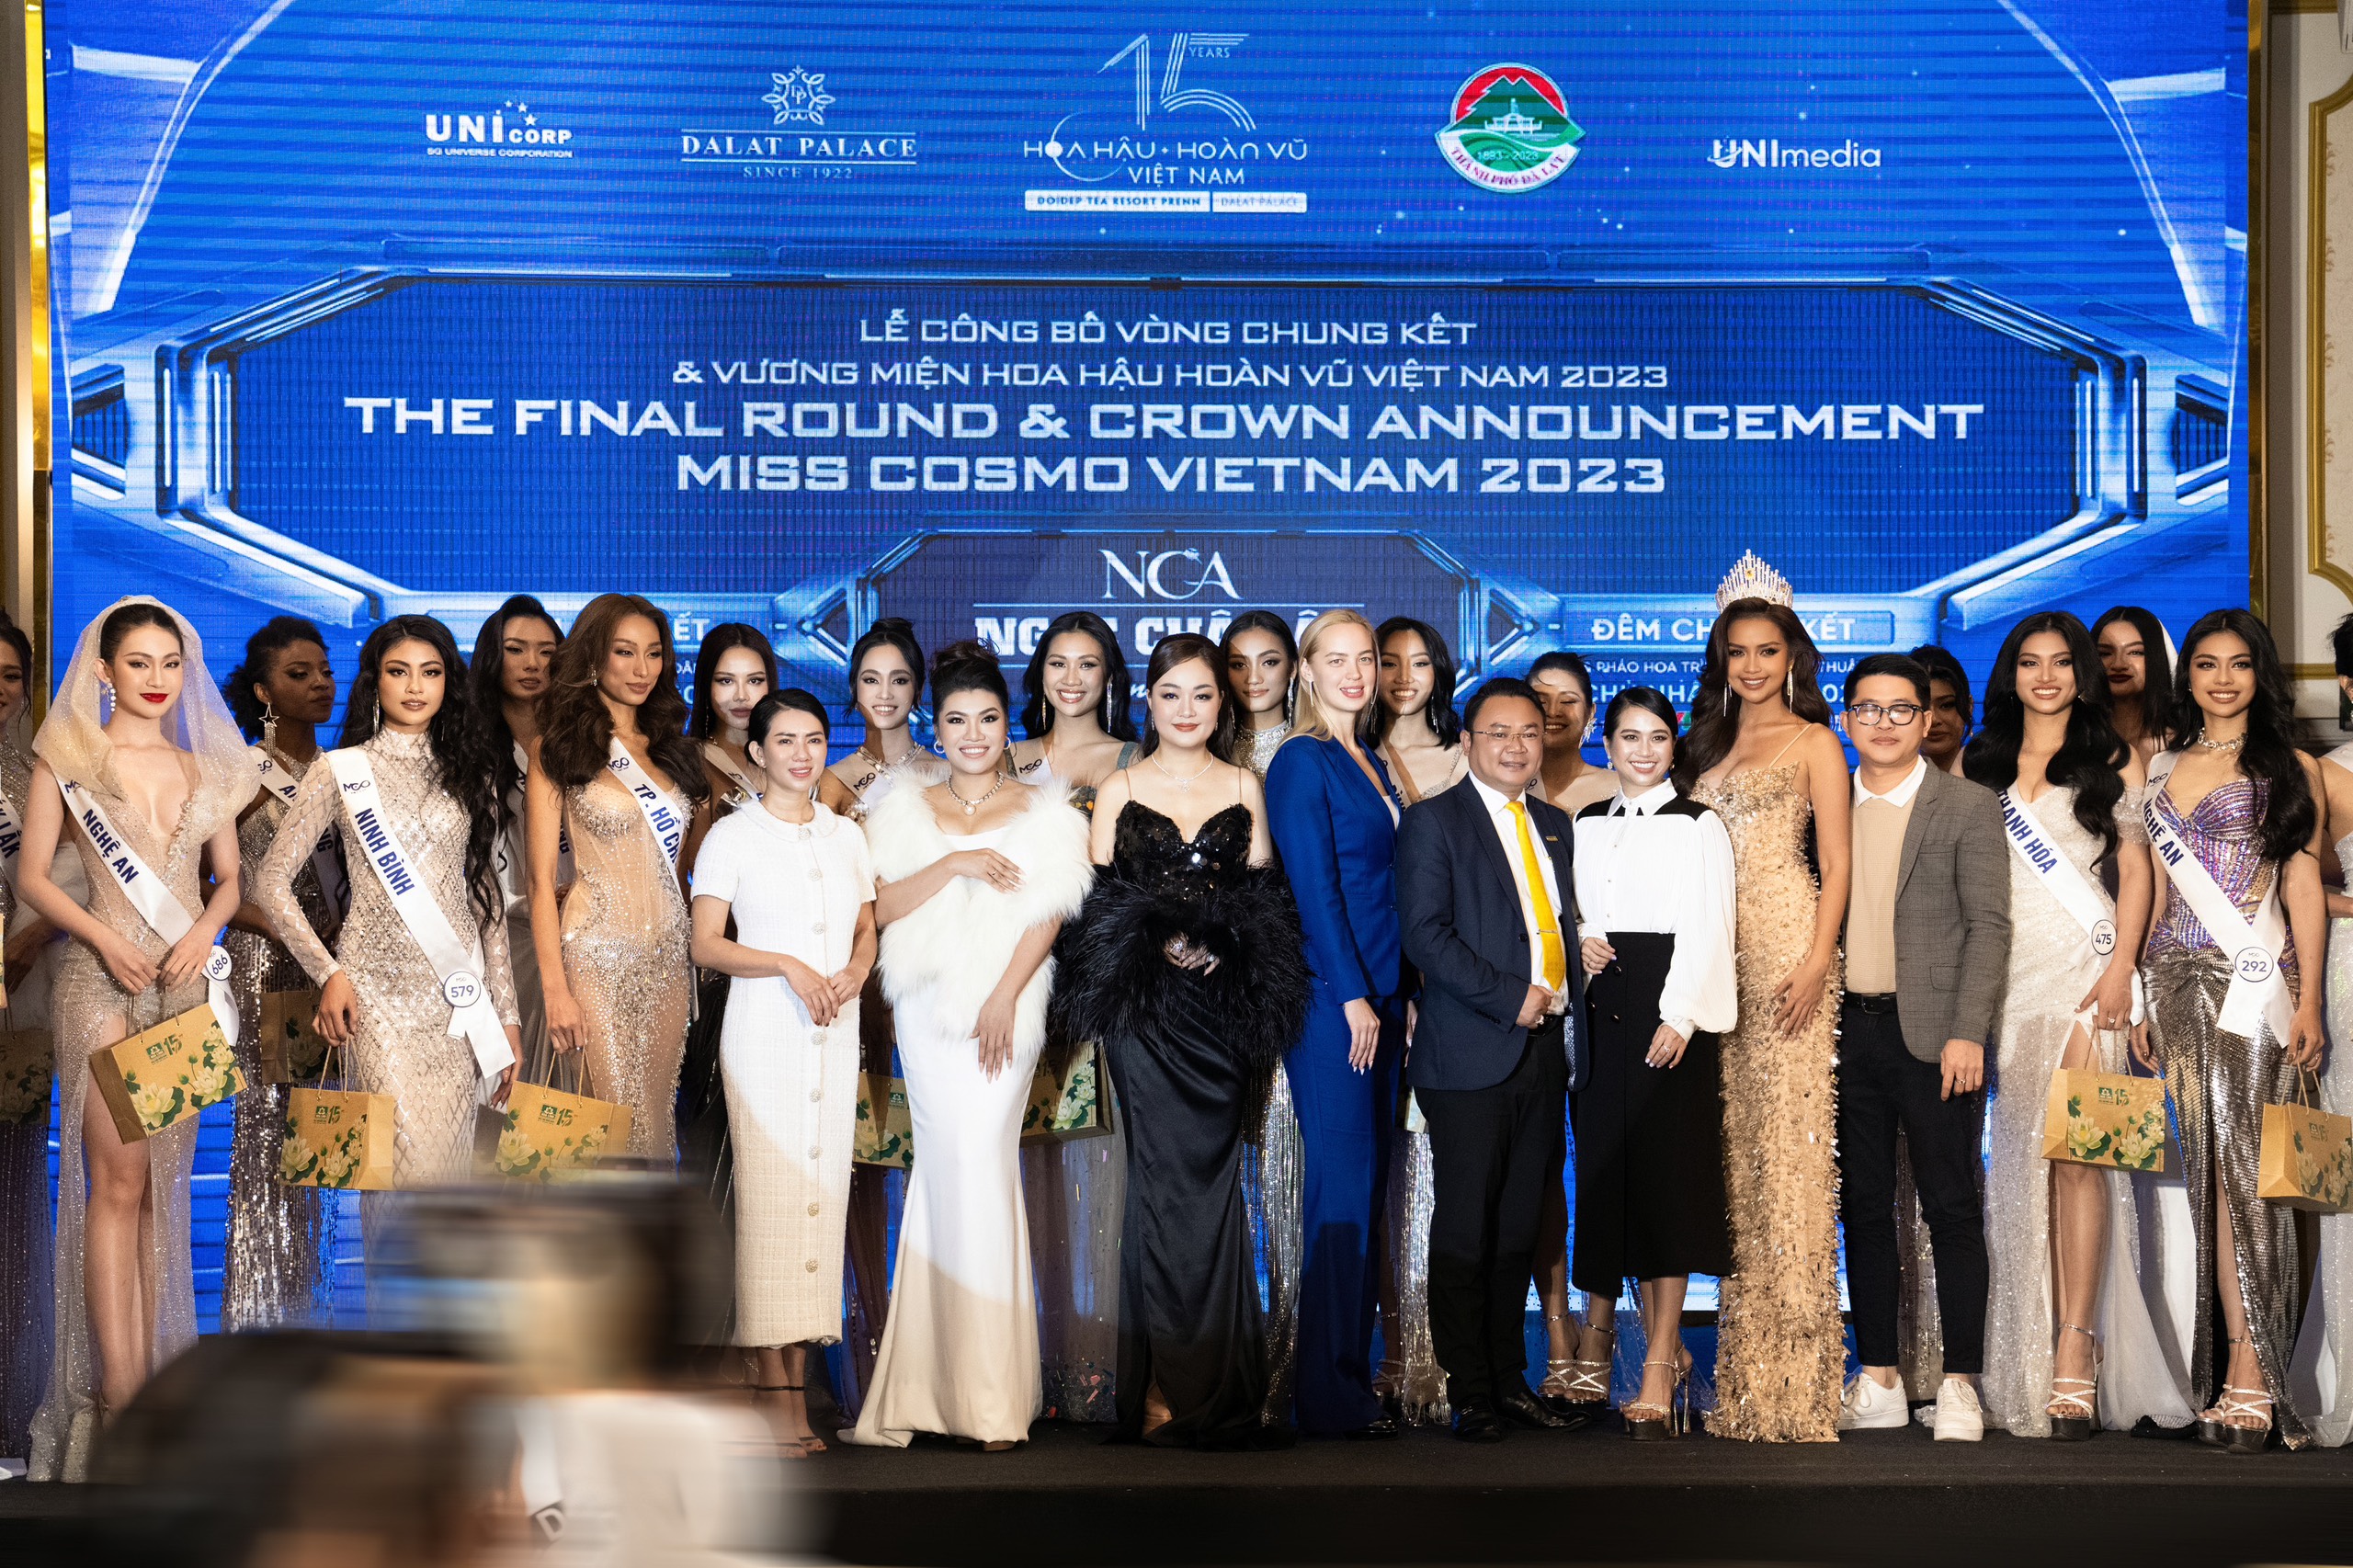 Kim cương Ngọc Châu Âu trở thành nhà tài trợ và chế tác vương miện Hoa hậu Hoàn vũ Việt Nam 2023 - 4